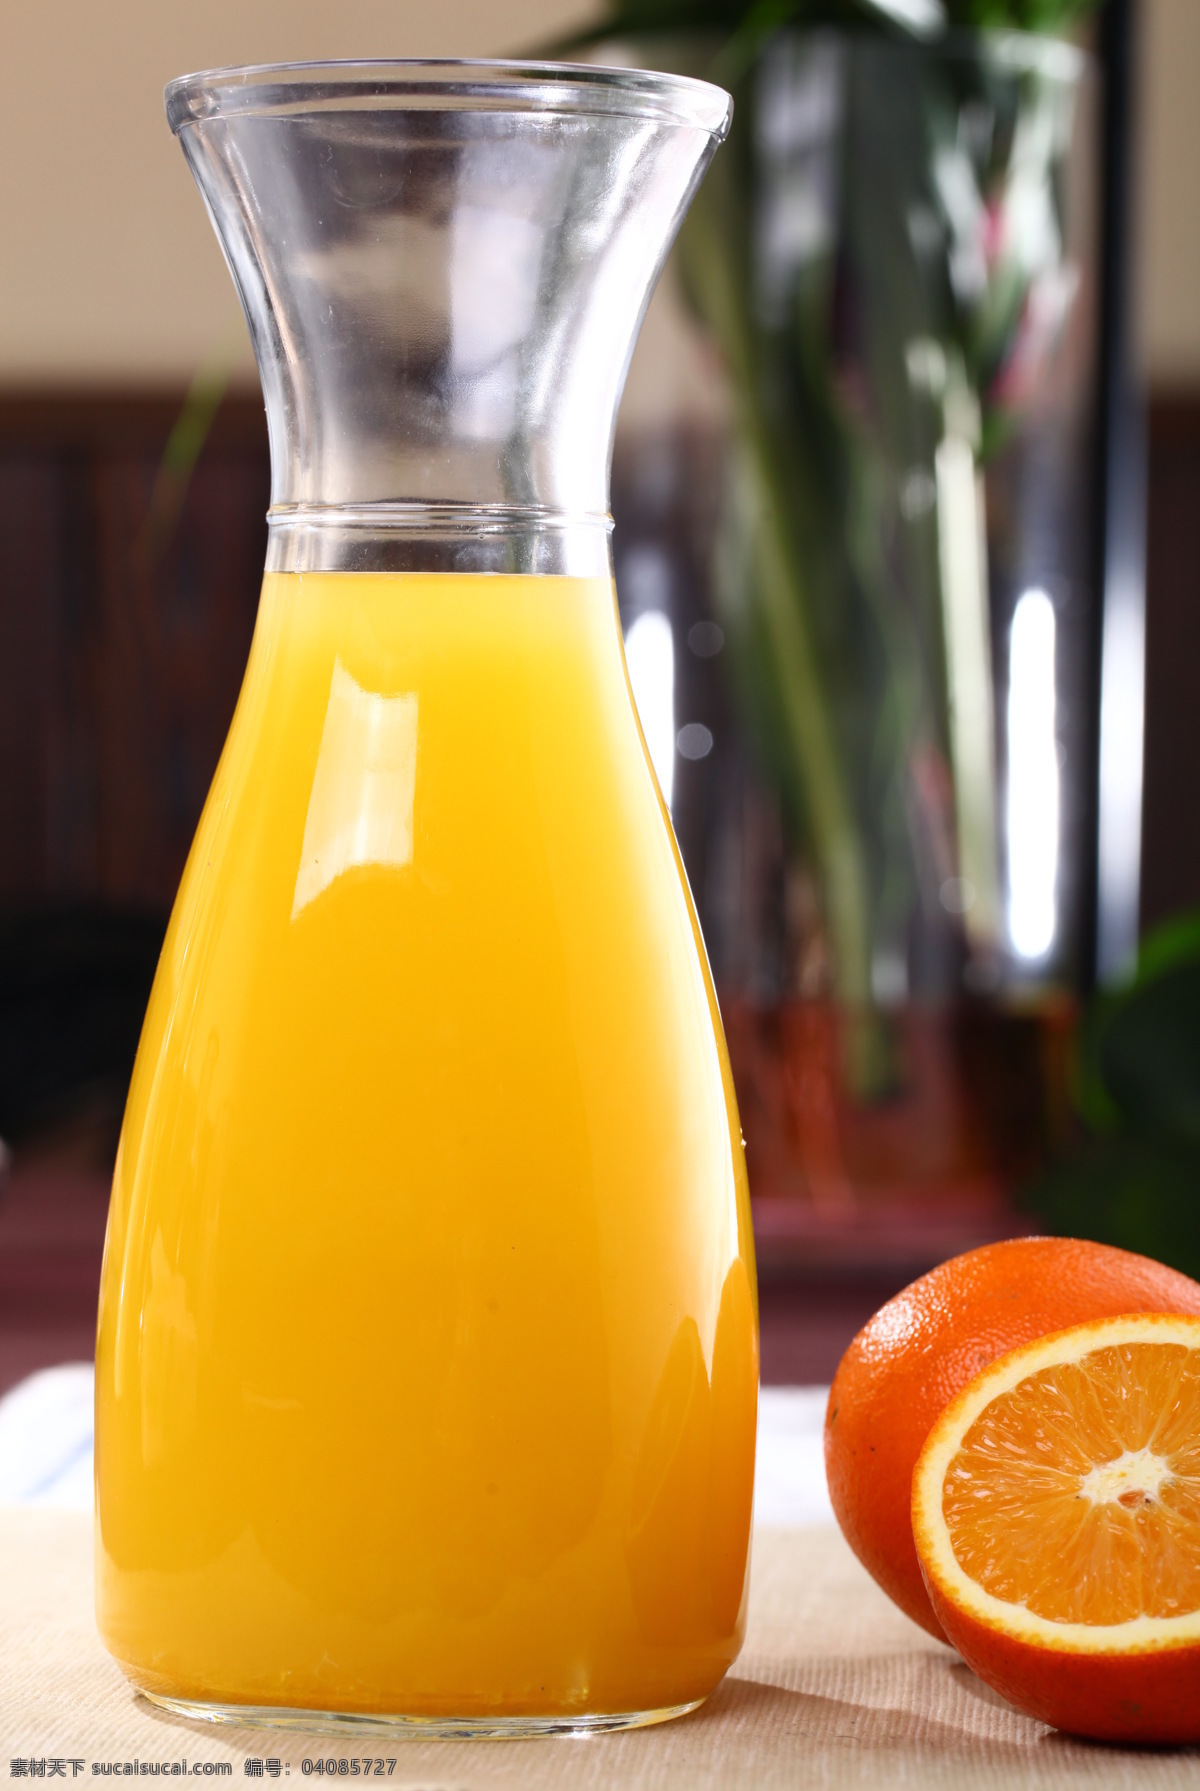 鲜榨橙汁 橙子 橙汁 柳橙汁 果汁 水果 饮料 解渴 食品饮料 饮料酒水 餐饮美食 果汁饮料